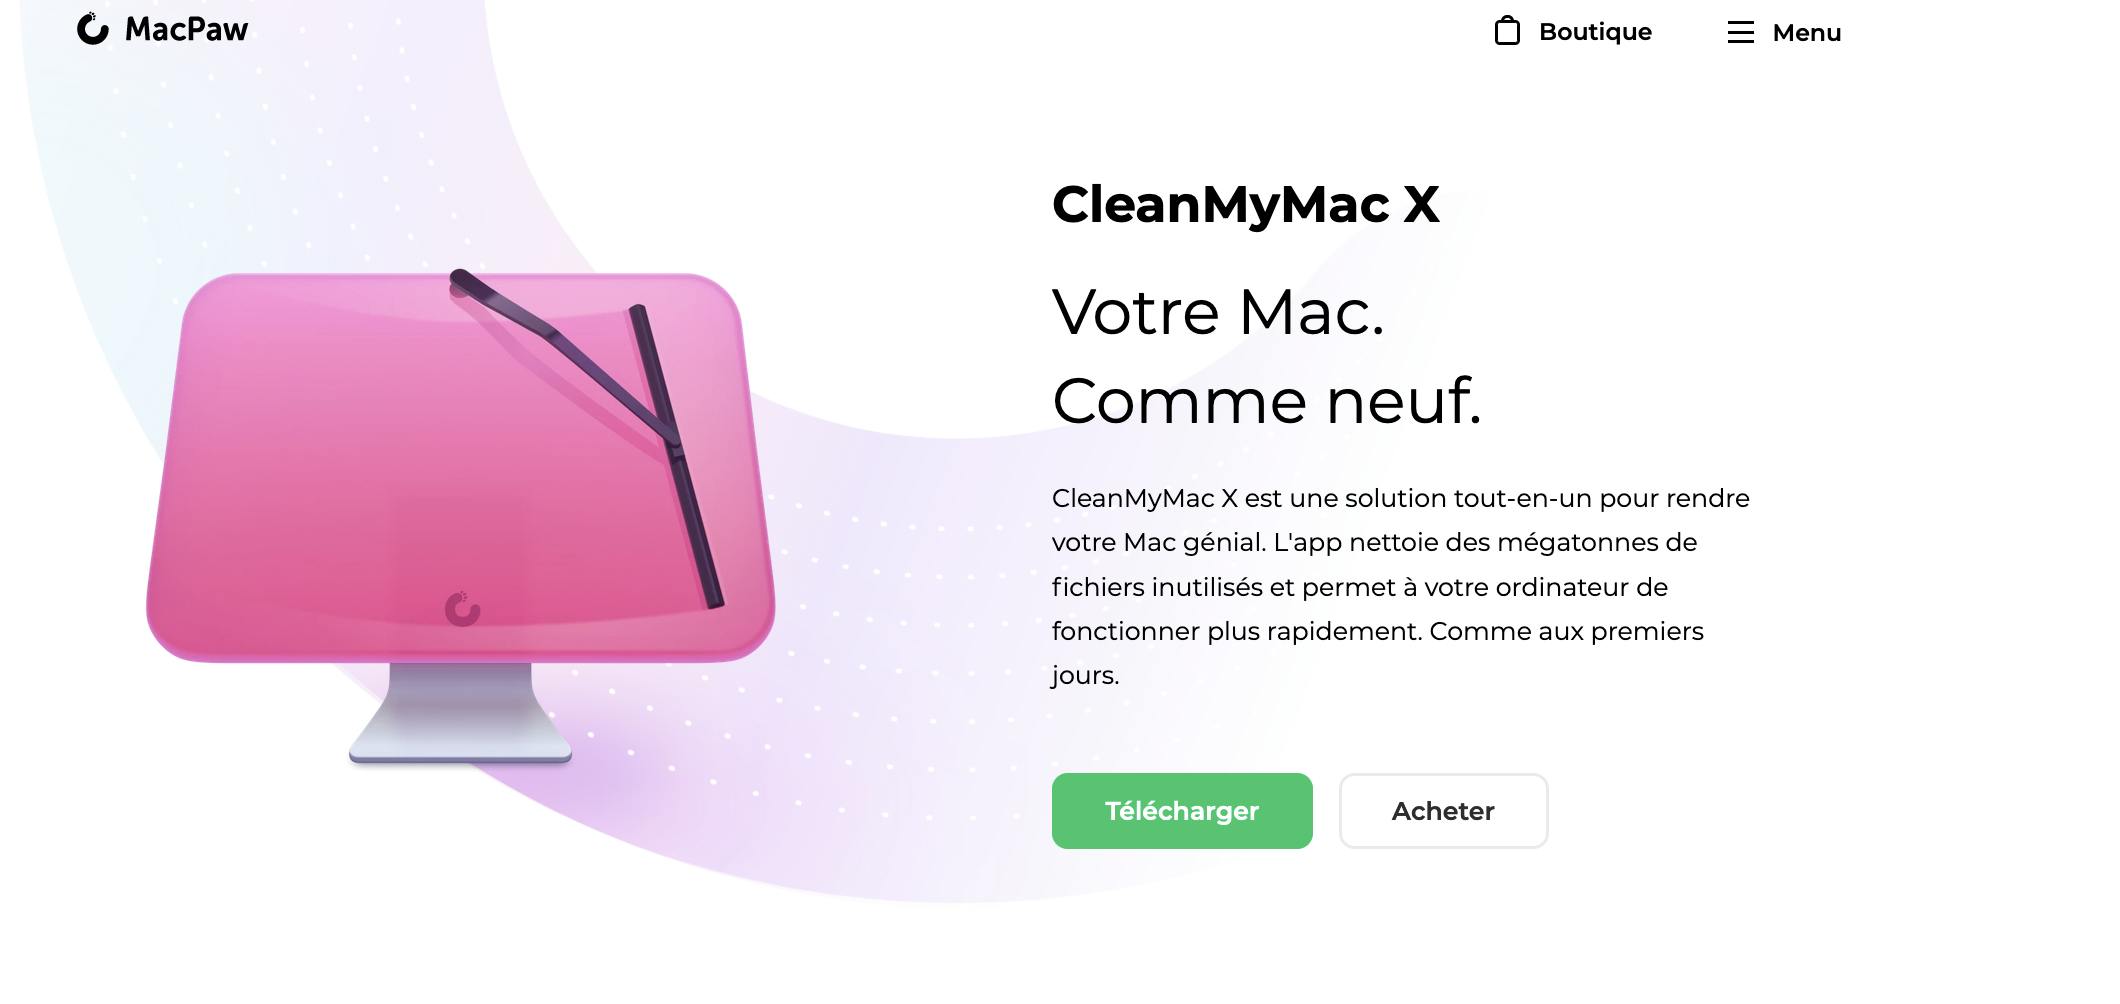 Come condividere CleanMyMac?